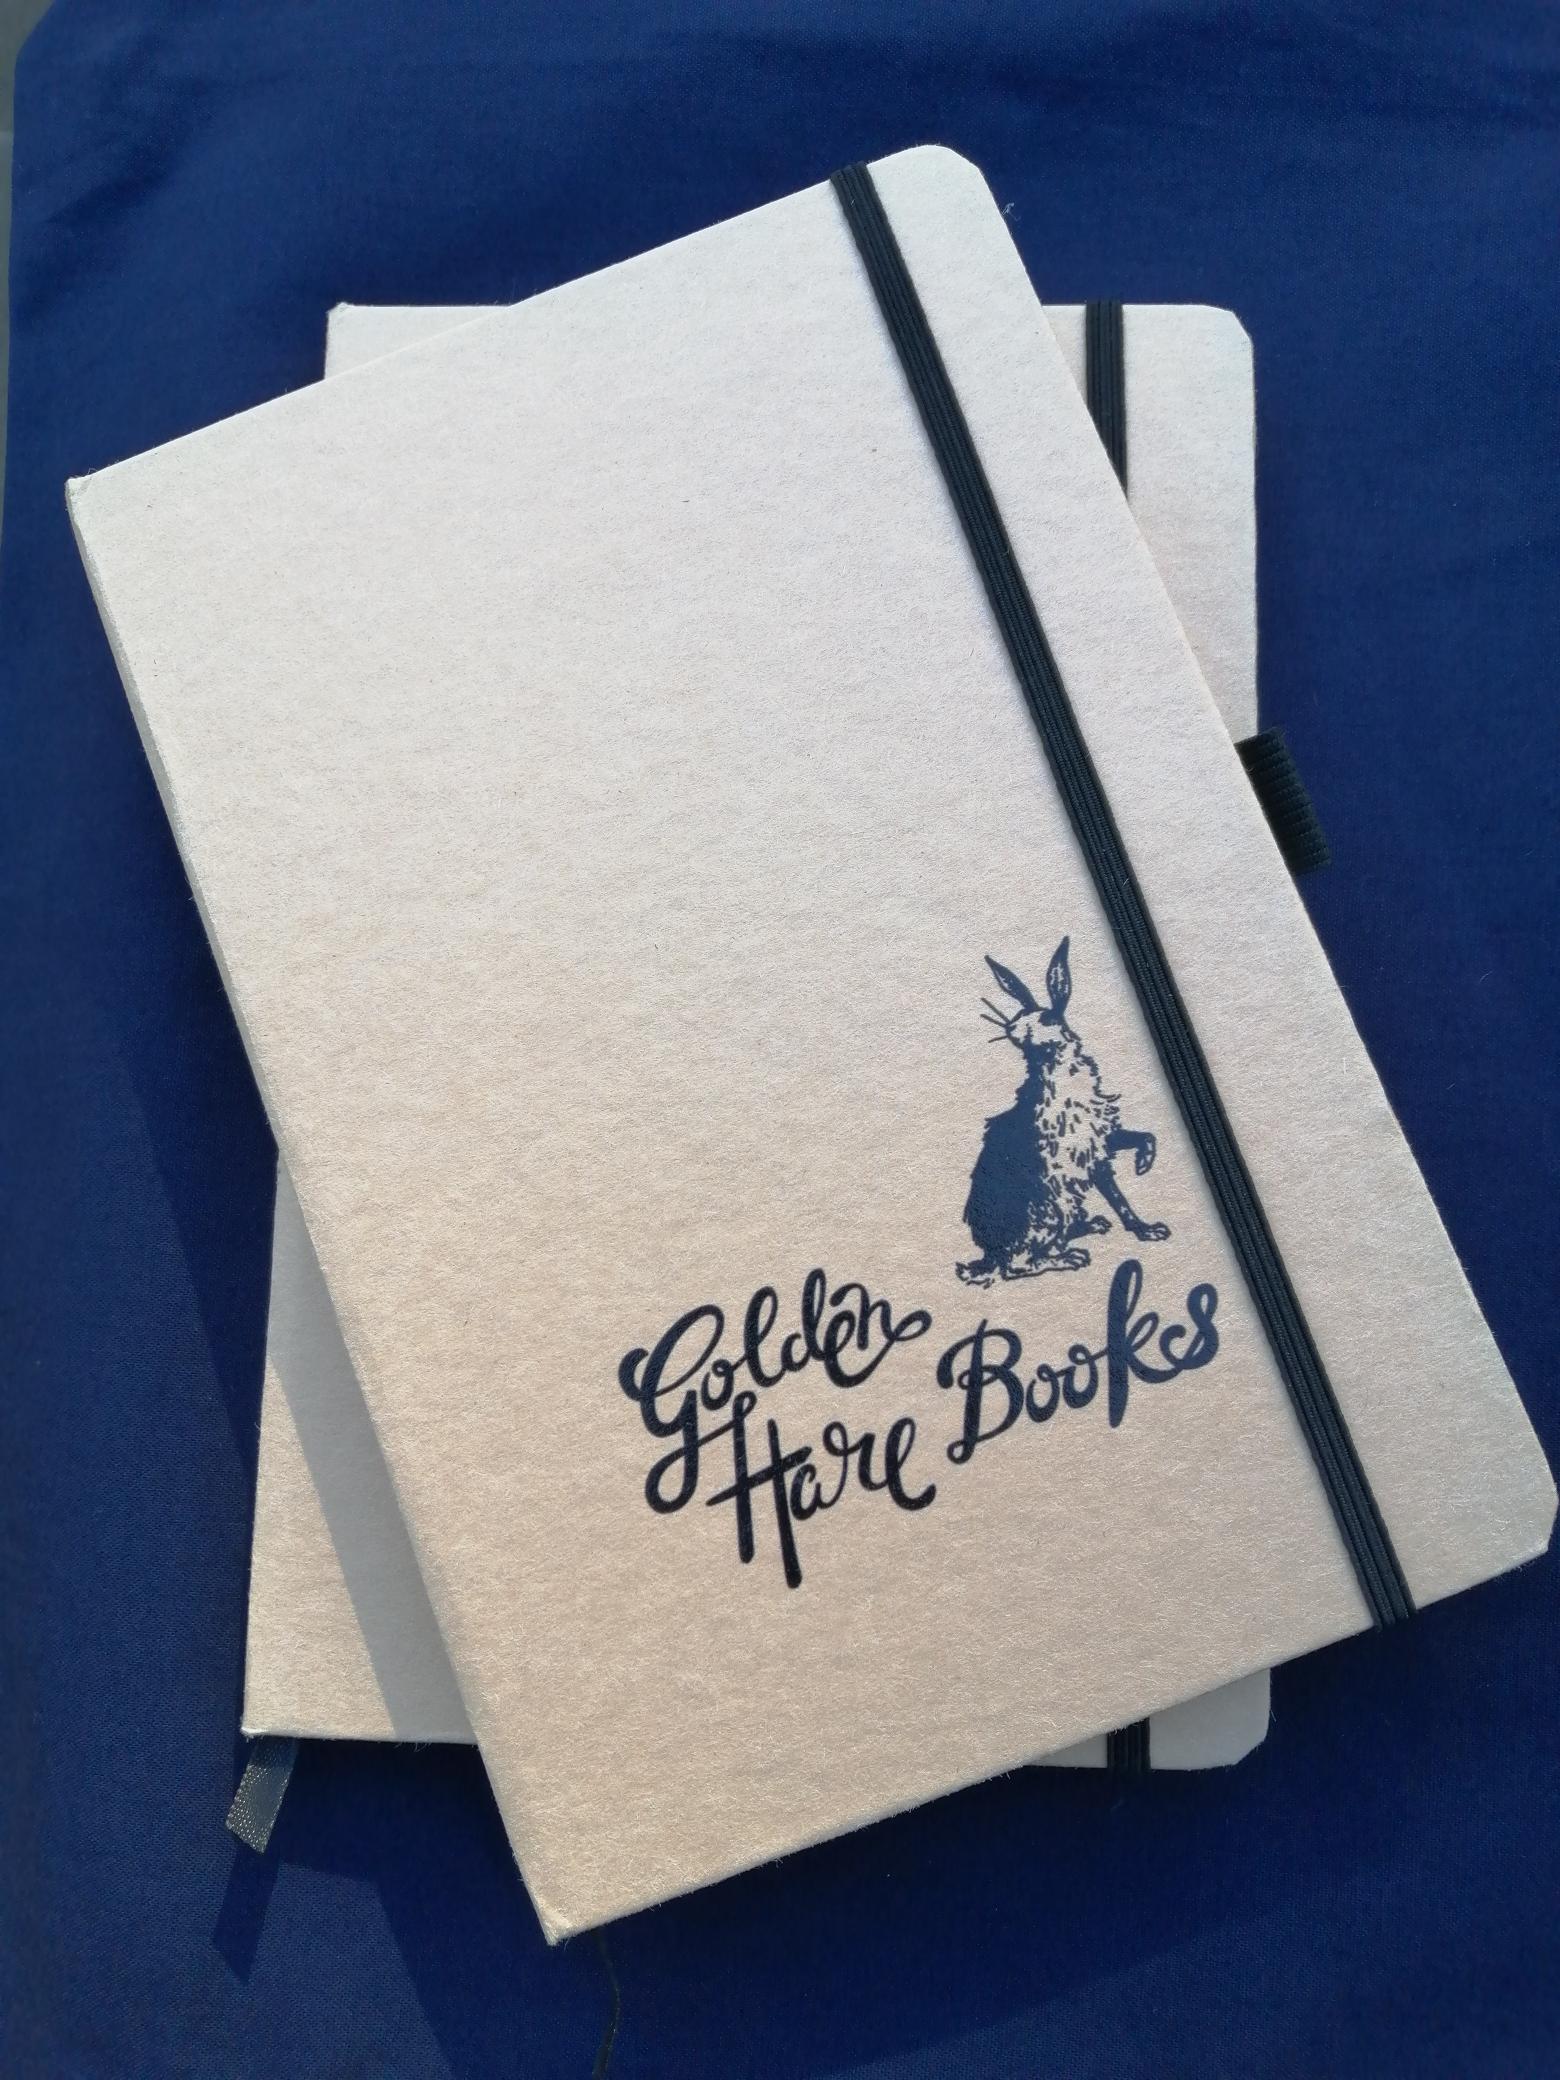 Golden Hare Books Notebook